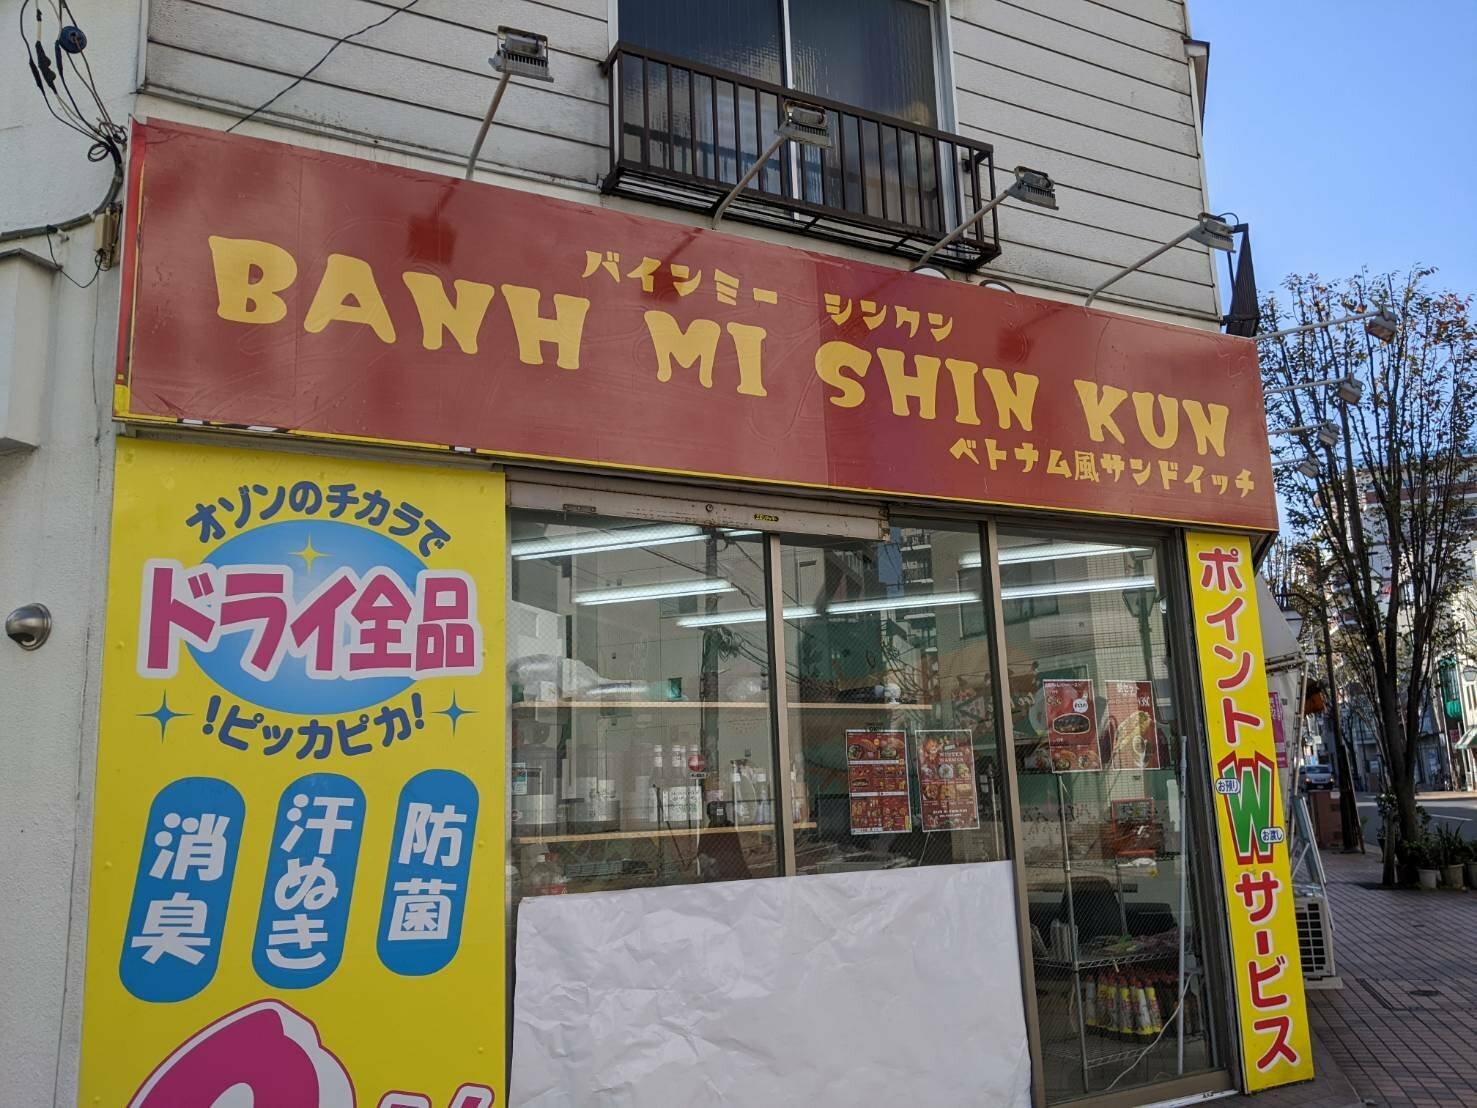 「BANH MI SHIN KUN（バインミーシンクン）」